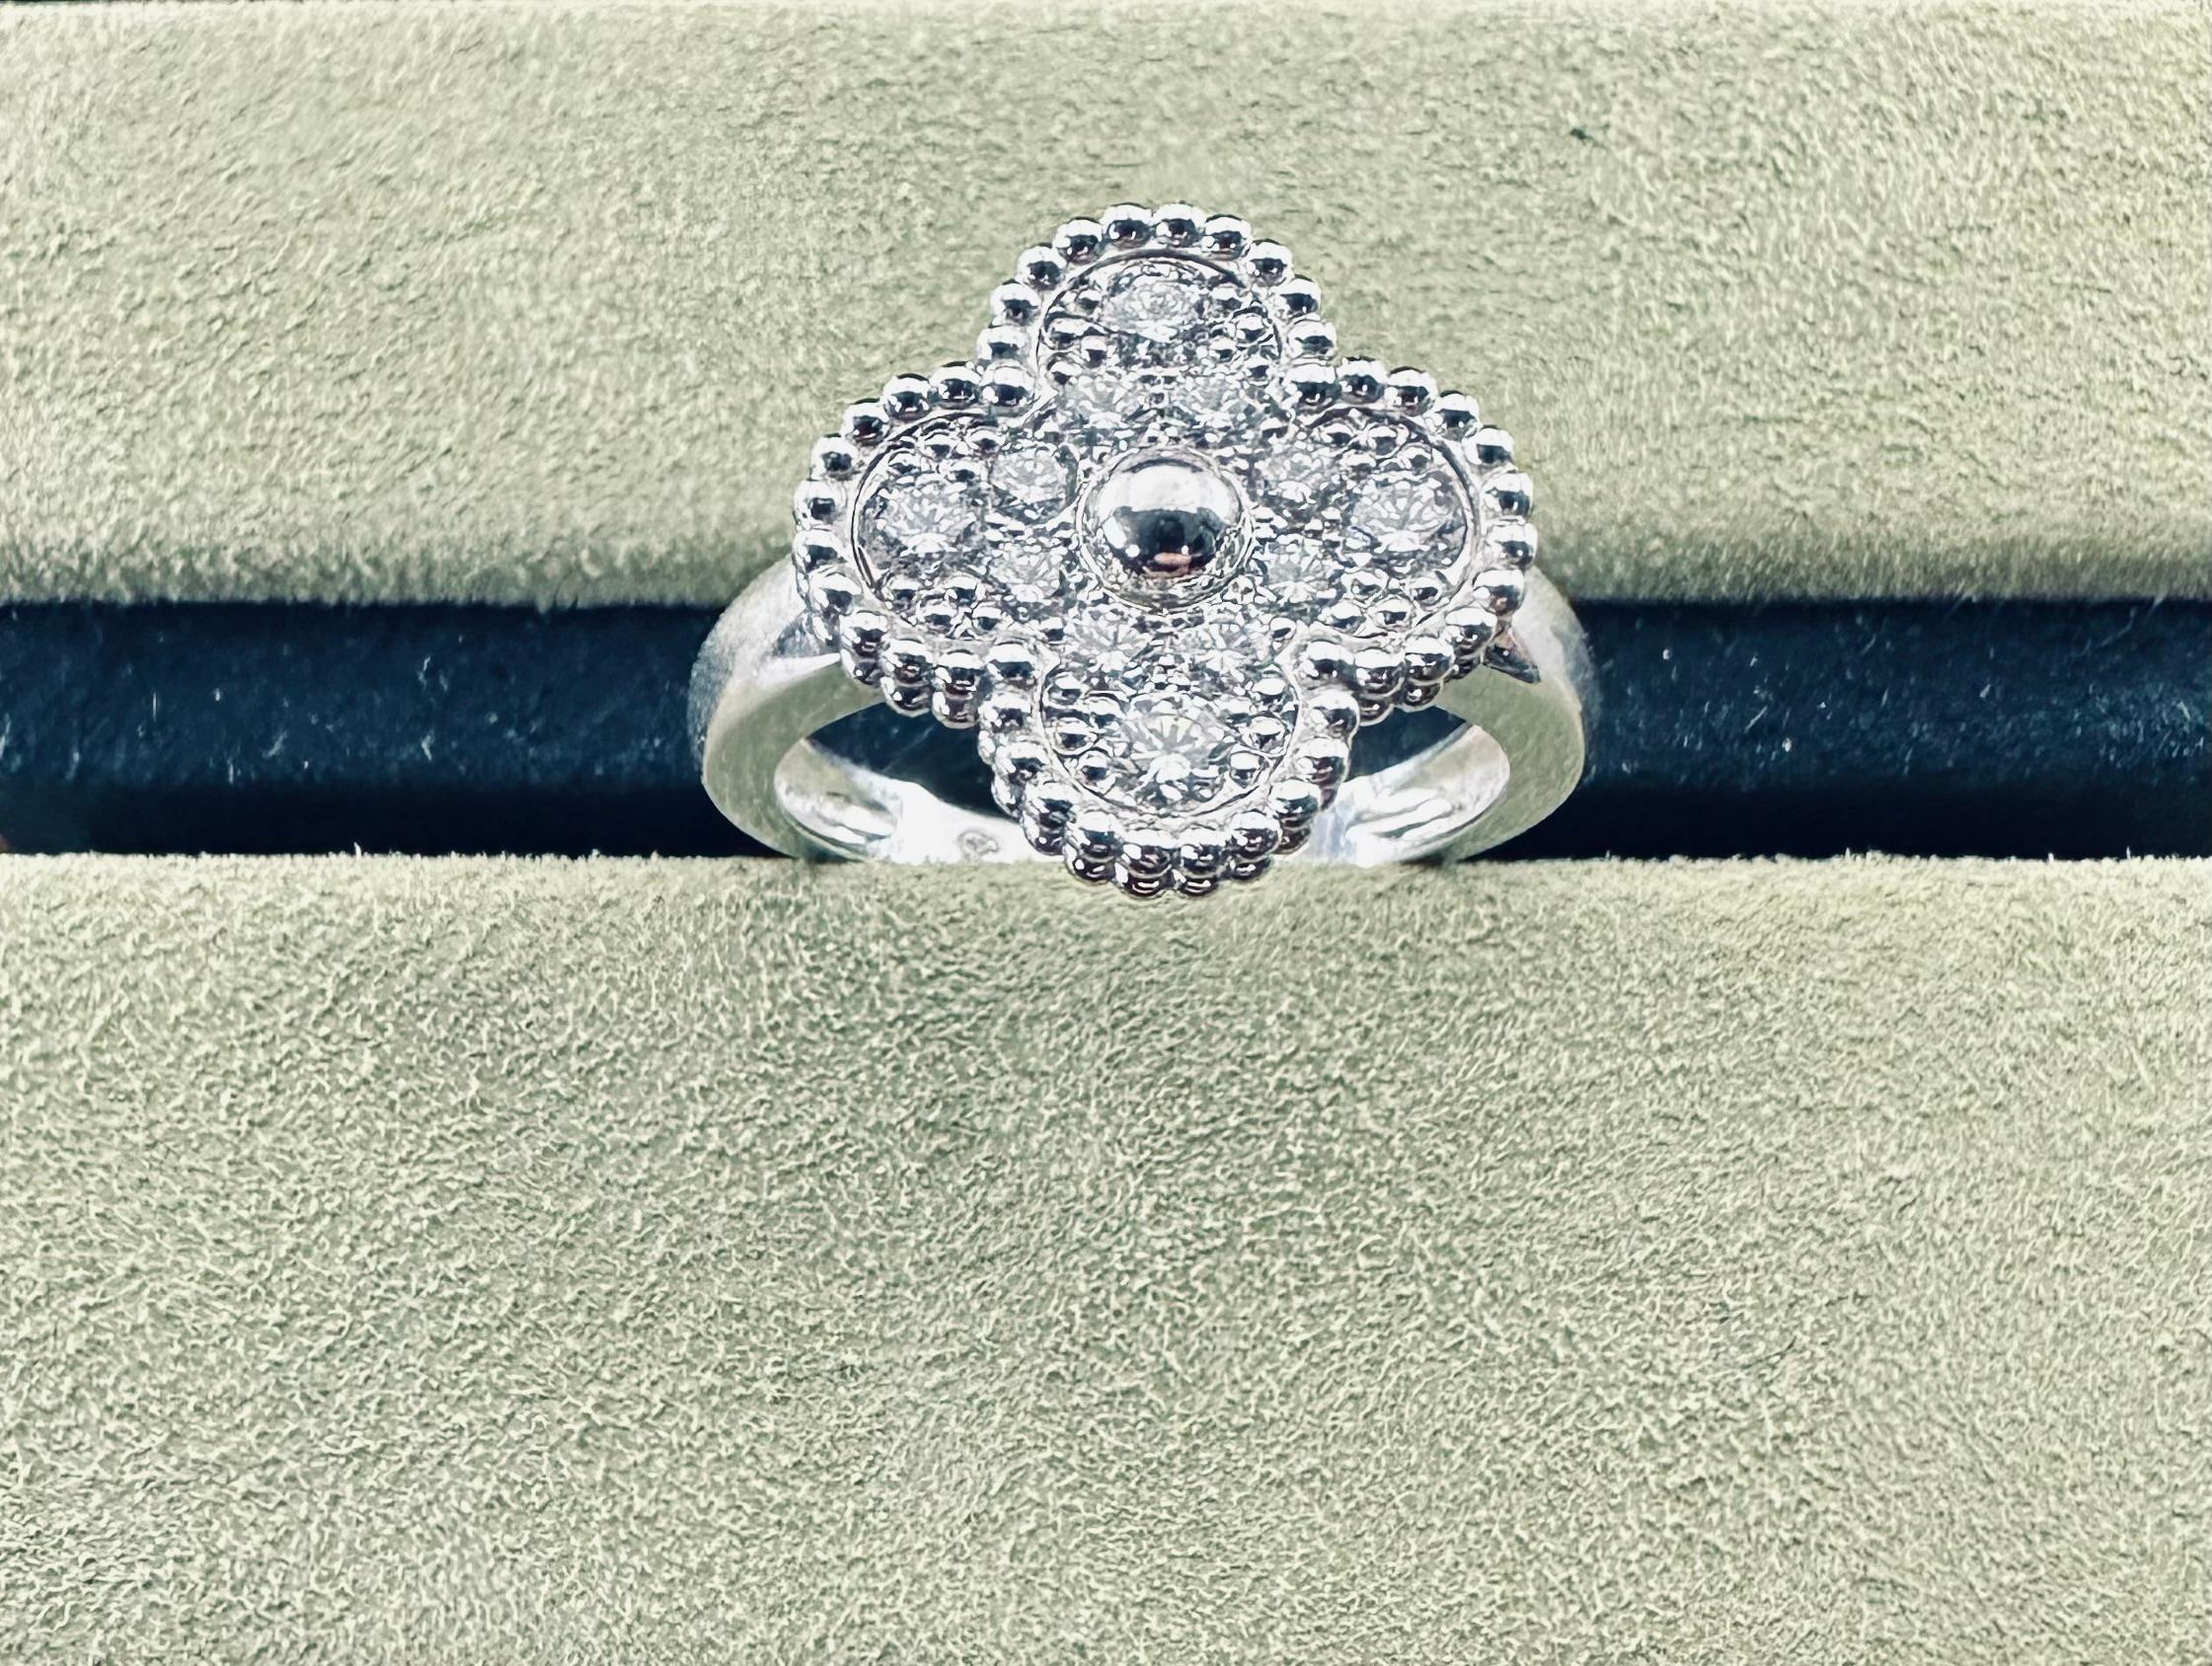 Vintage Alhambra Ring, rhodiniertes 18K Weißgold, runde Diamanten; Diamantqualität DEF, IF bis VVS.
12 Runde Brillantschliff .48 cts
18k Weißgold 
Größe 54
